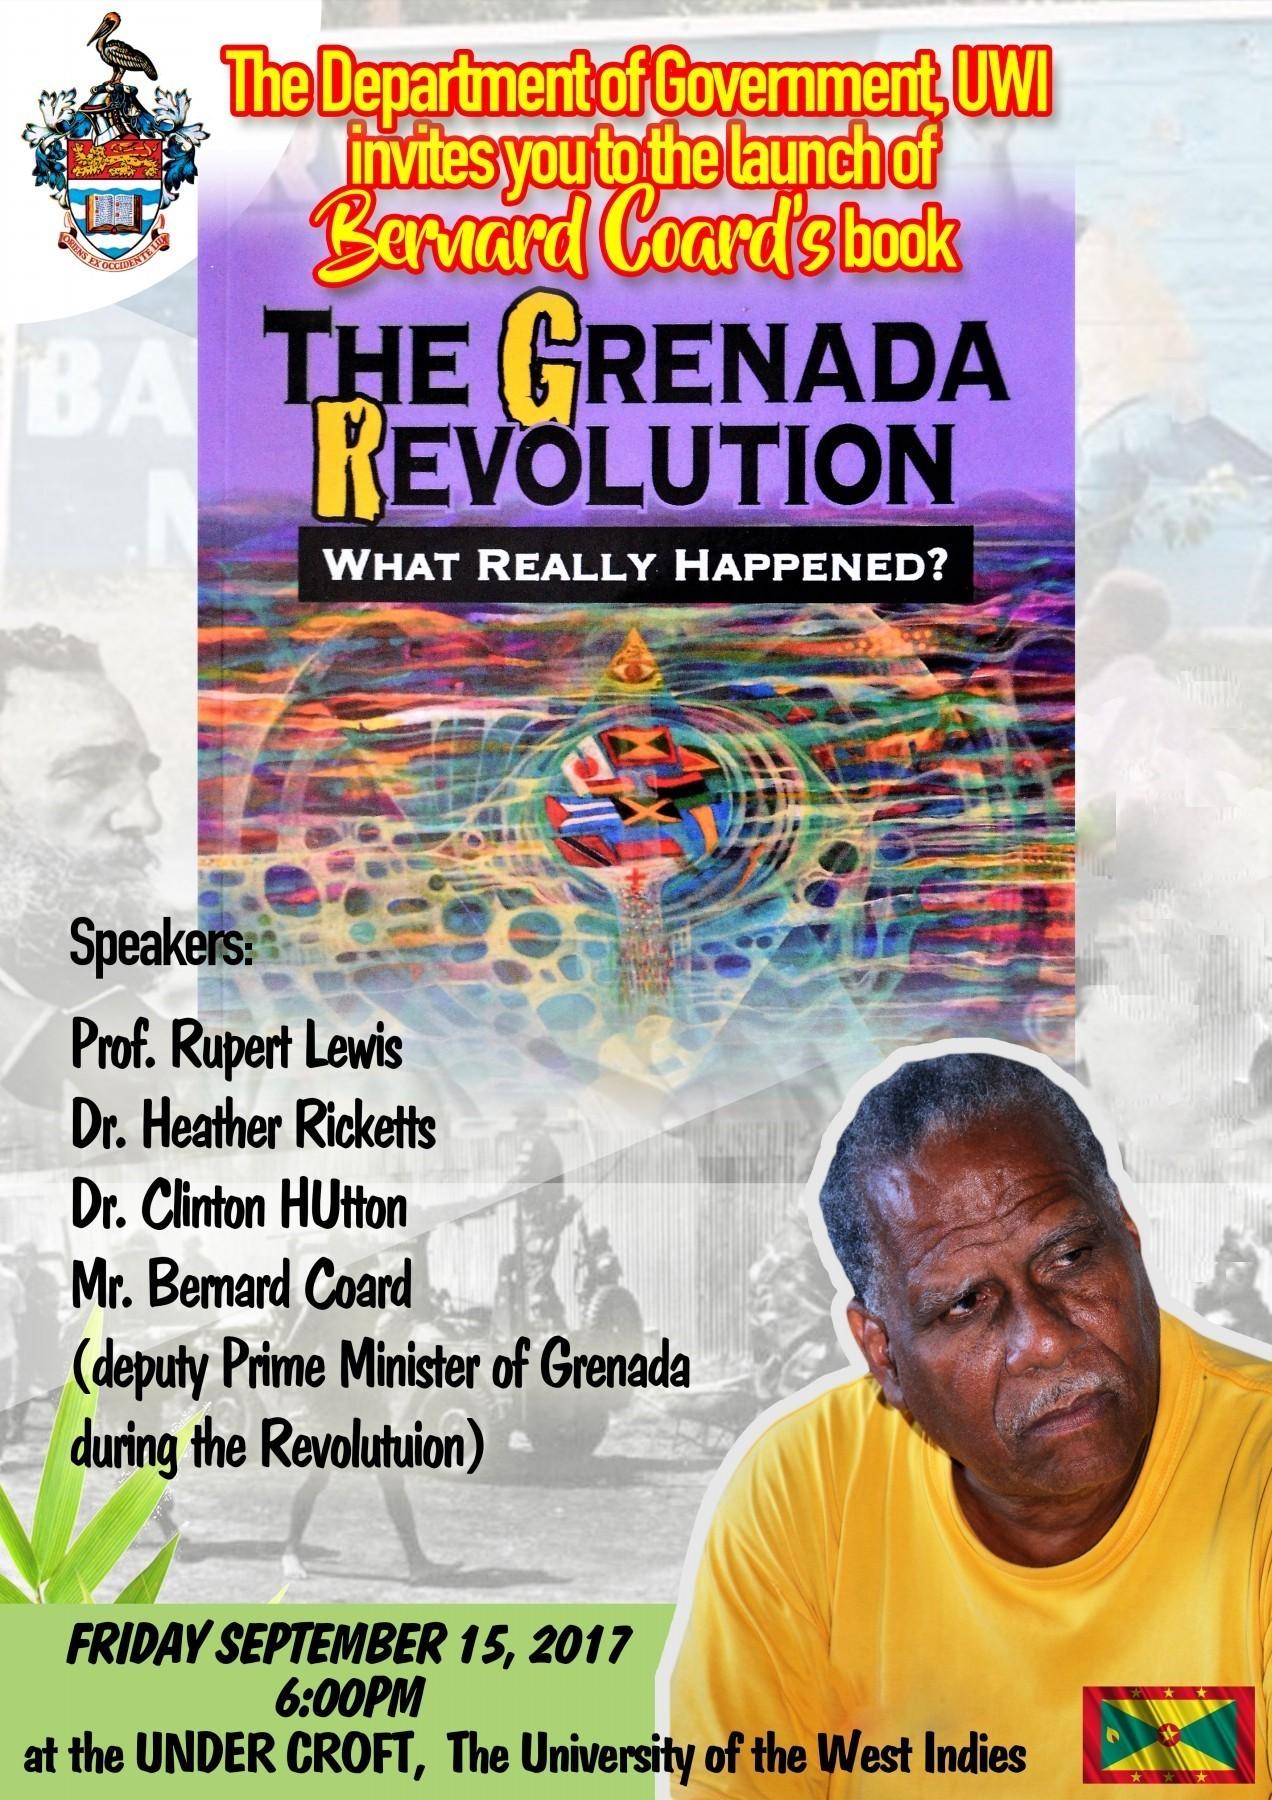 Book Launch of 'The Grenada Revolution'